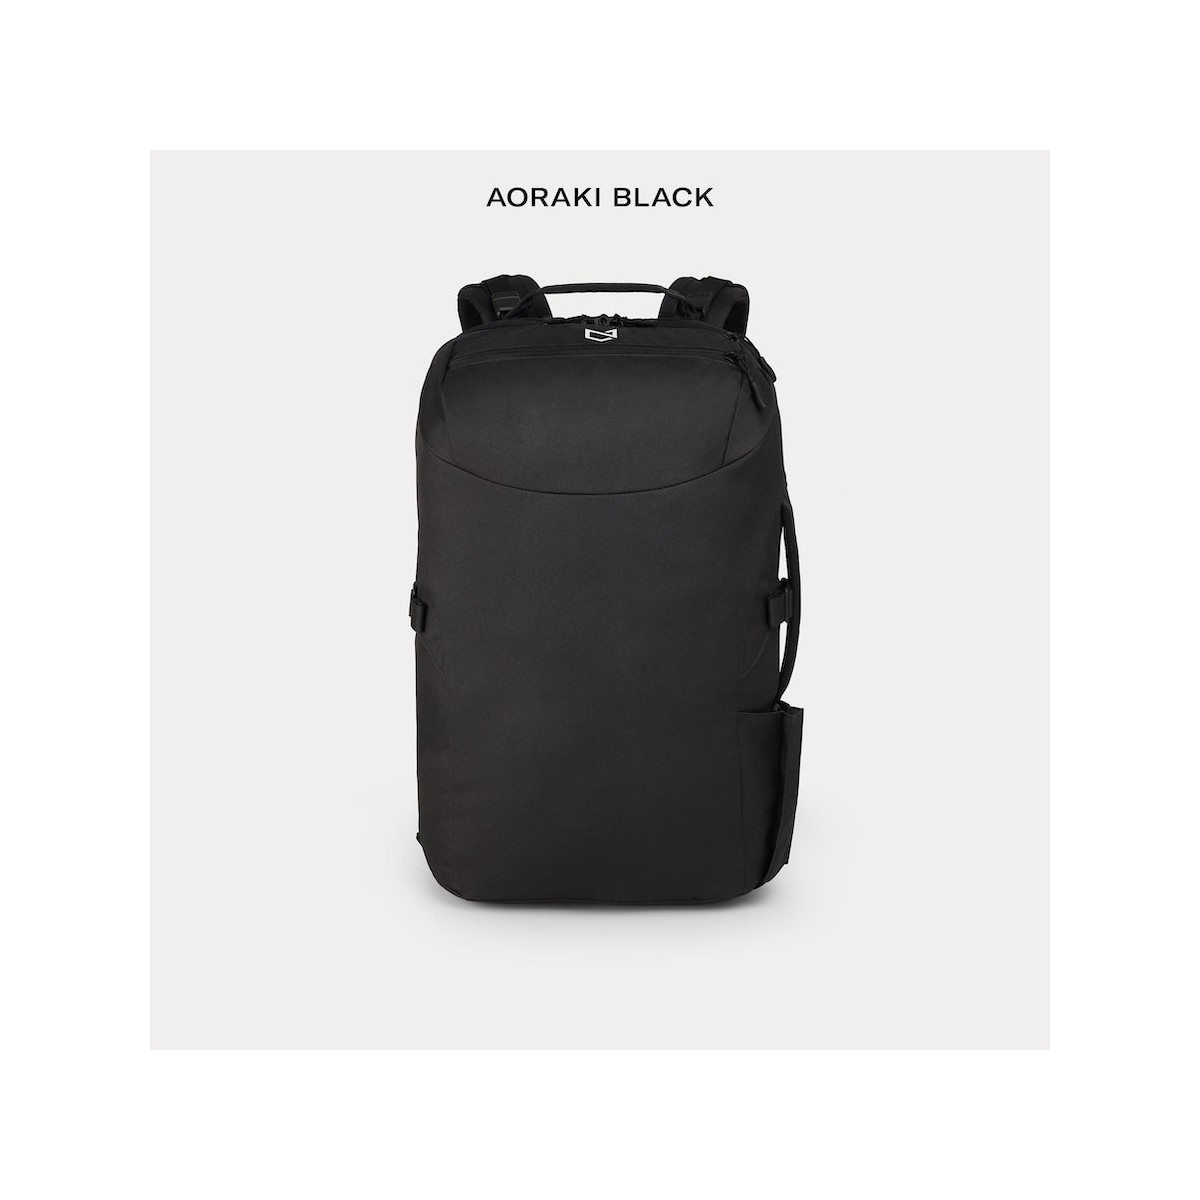 【ほぼ未使用】Minaal Bag CARRY-ON 3.0 BAG